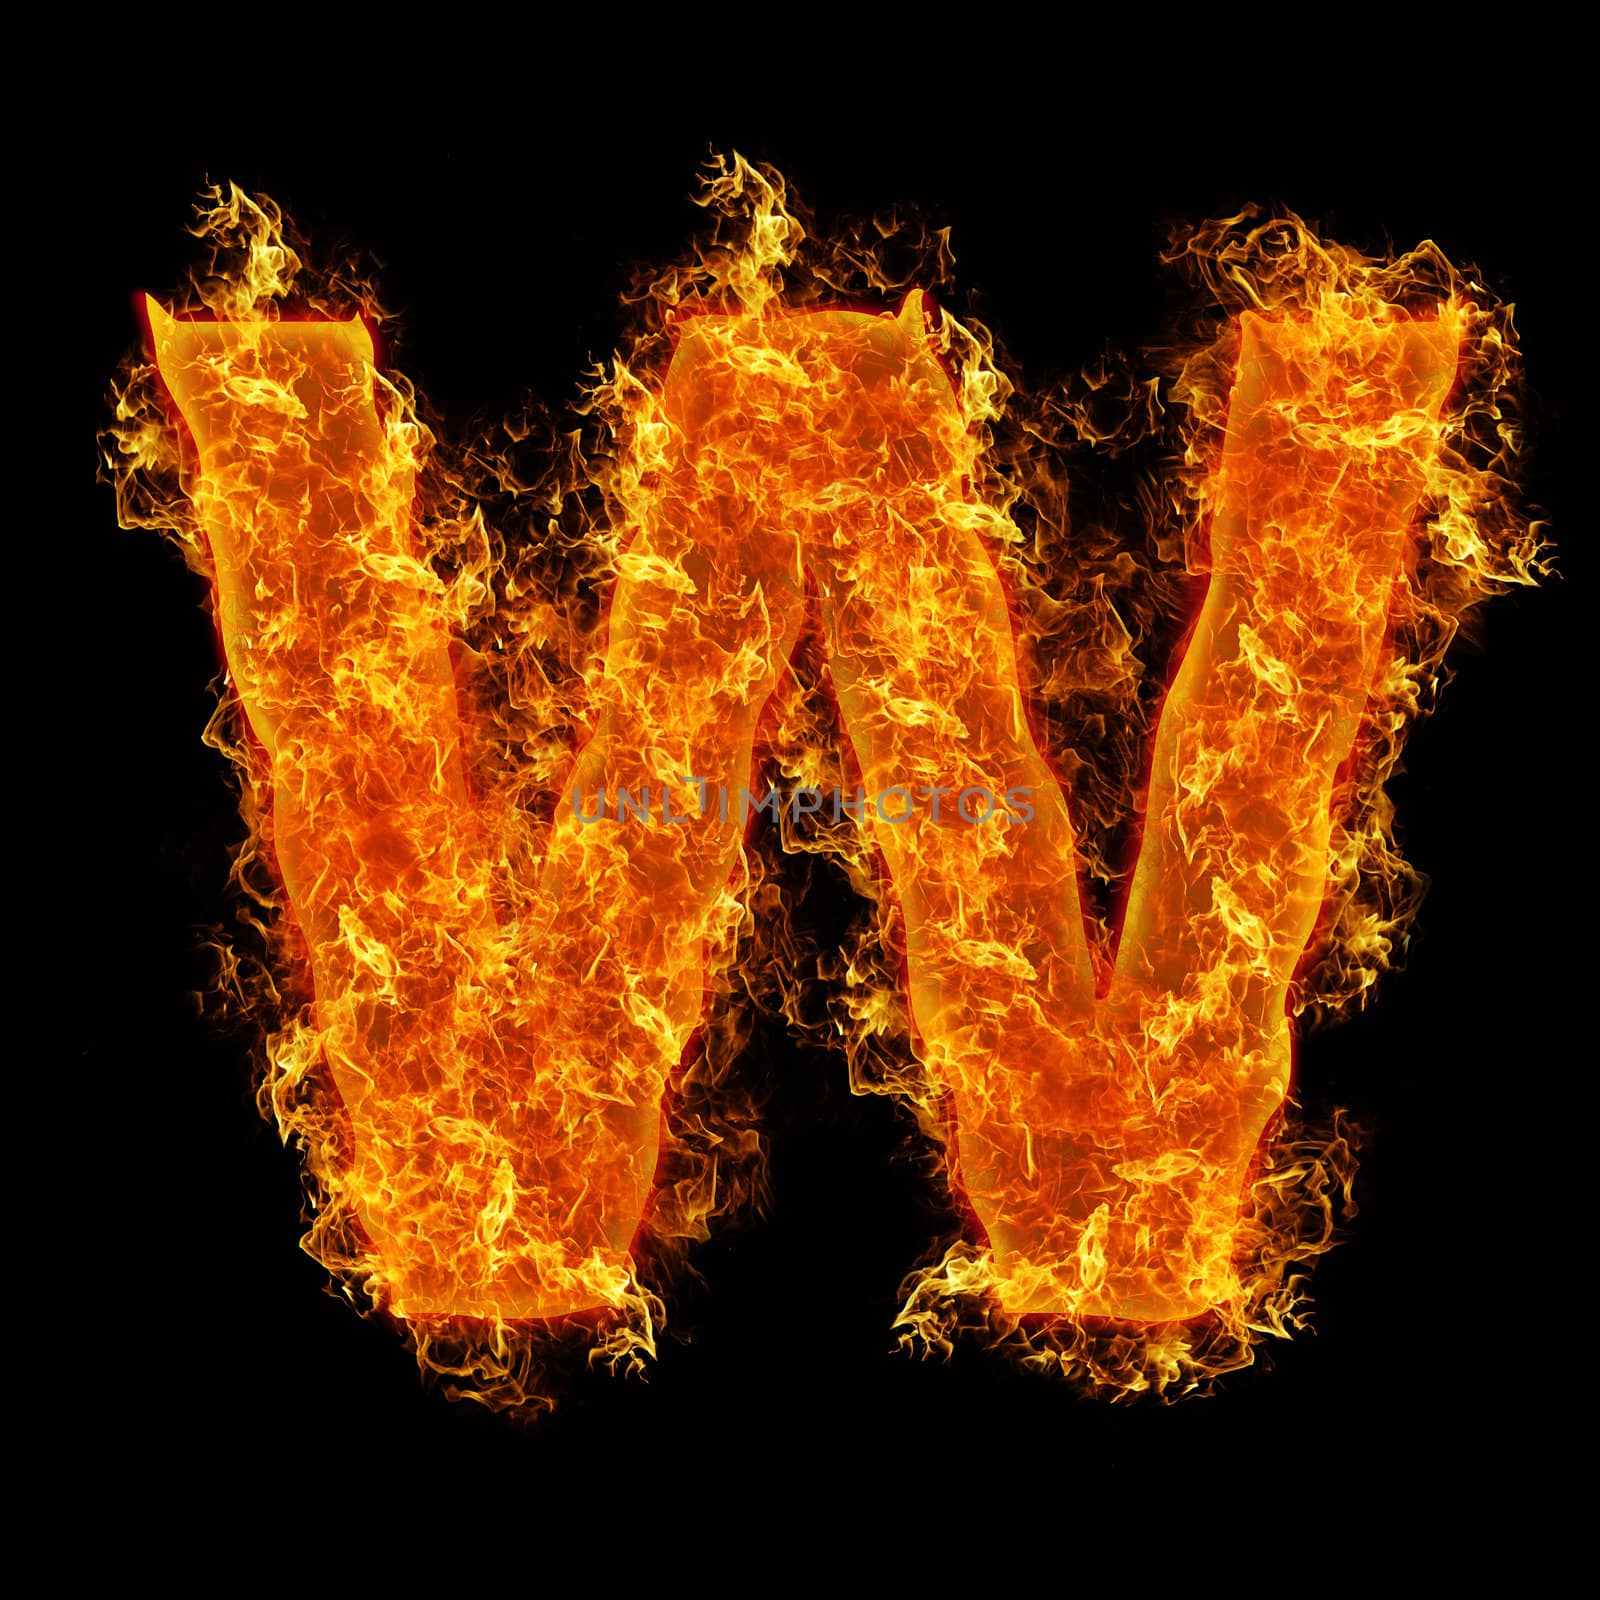 Fire letter W by rusak